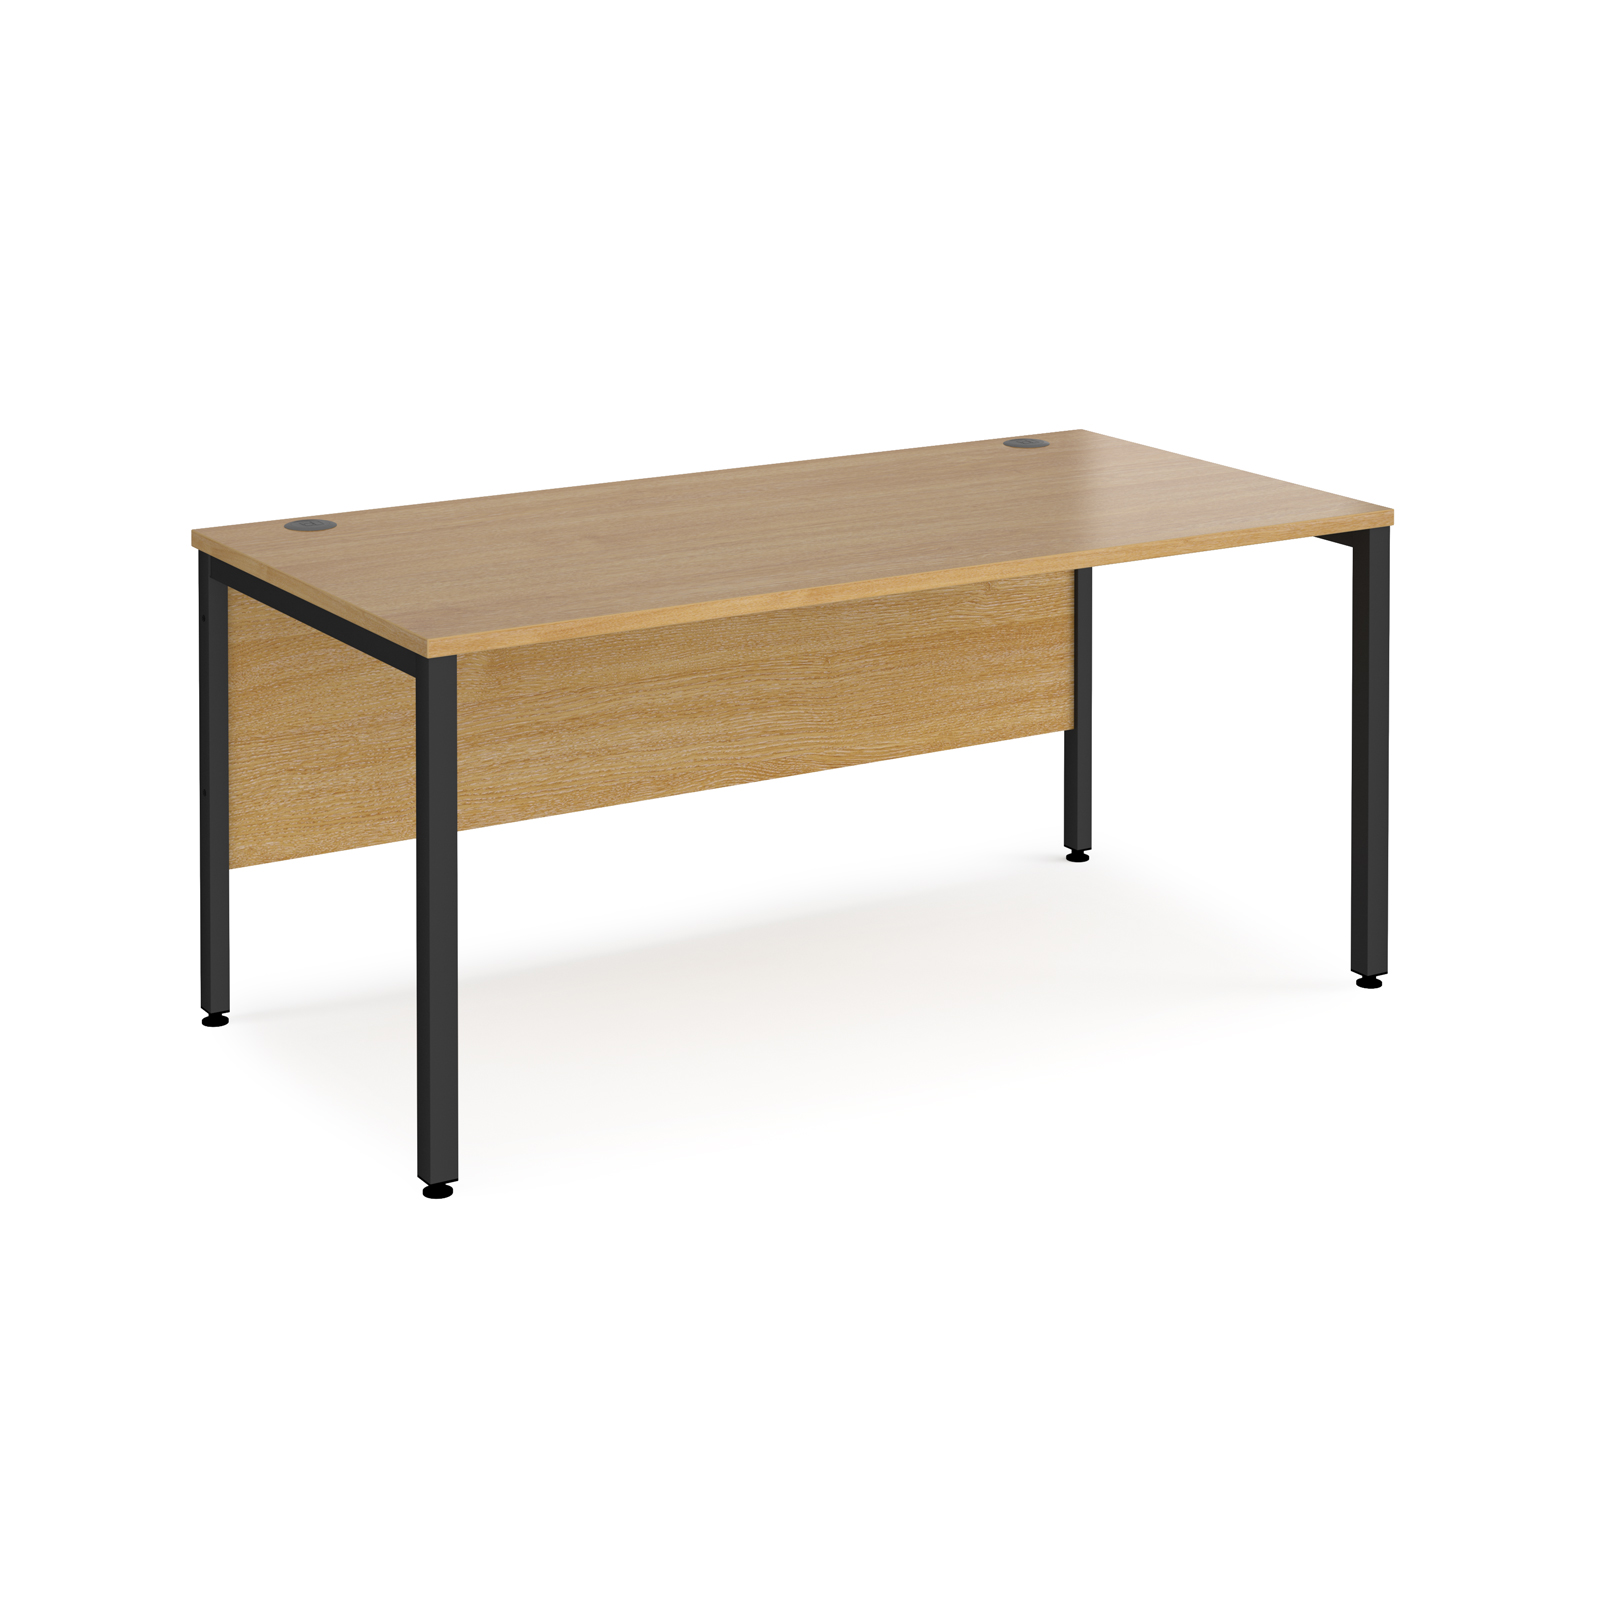 Maestro 25 straight desk 1600mm x 800mm - black bench leg frame, oak top